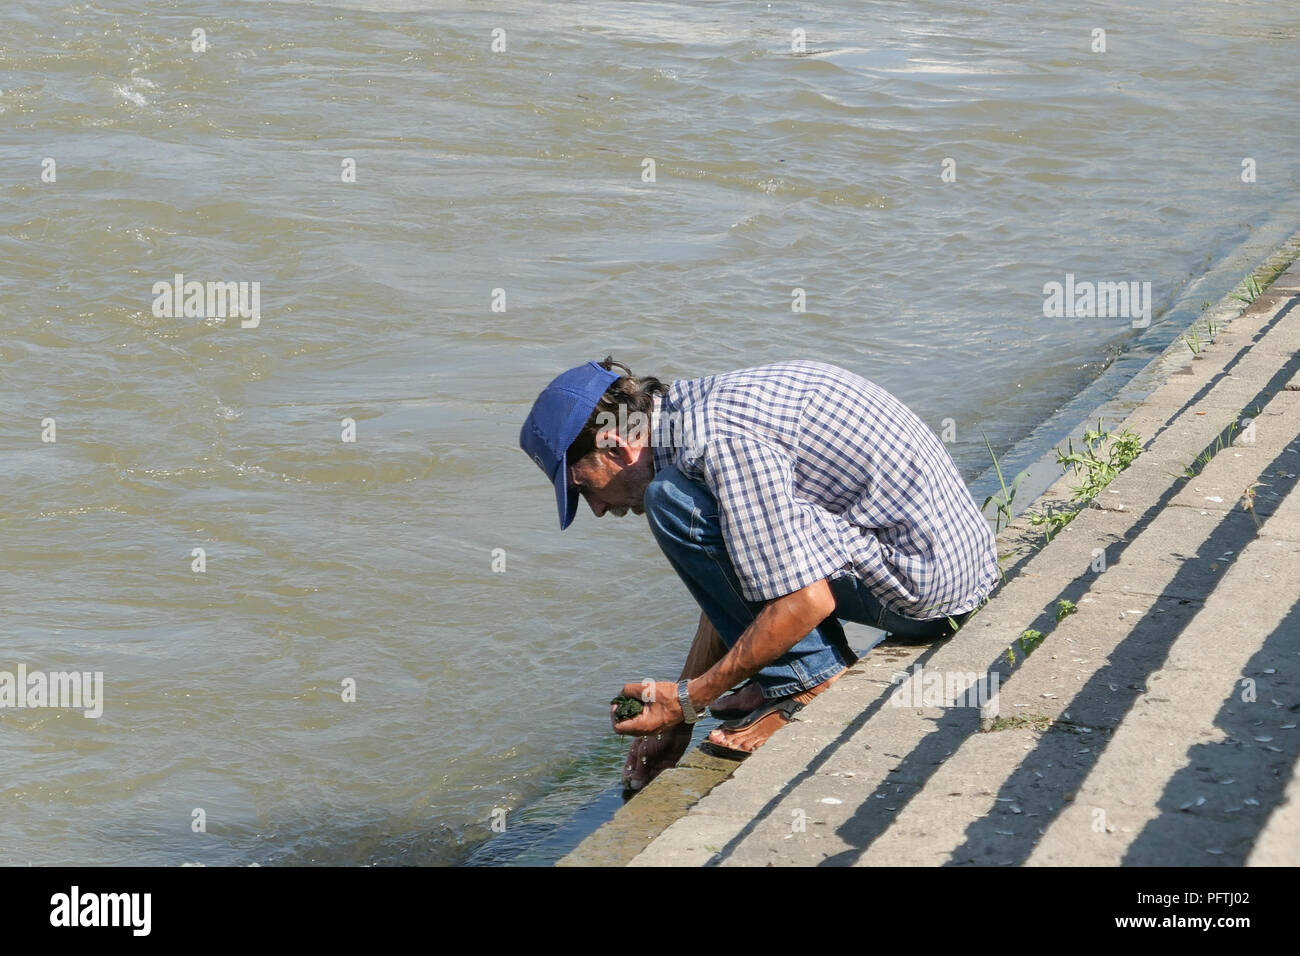 L'homme de recueillir les algues à utiliser comme appâts de pêche de la rivière Vardar, Skopje, Macédoine Banque D'Images